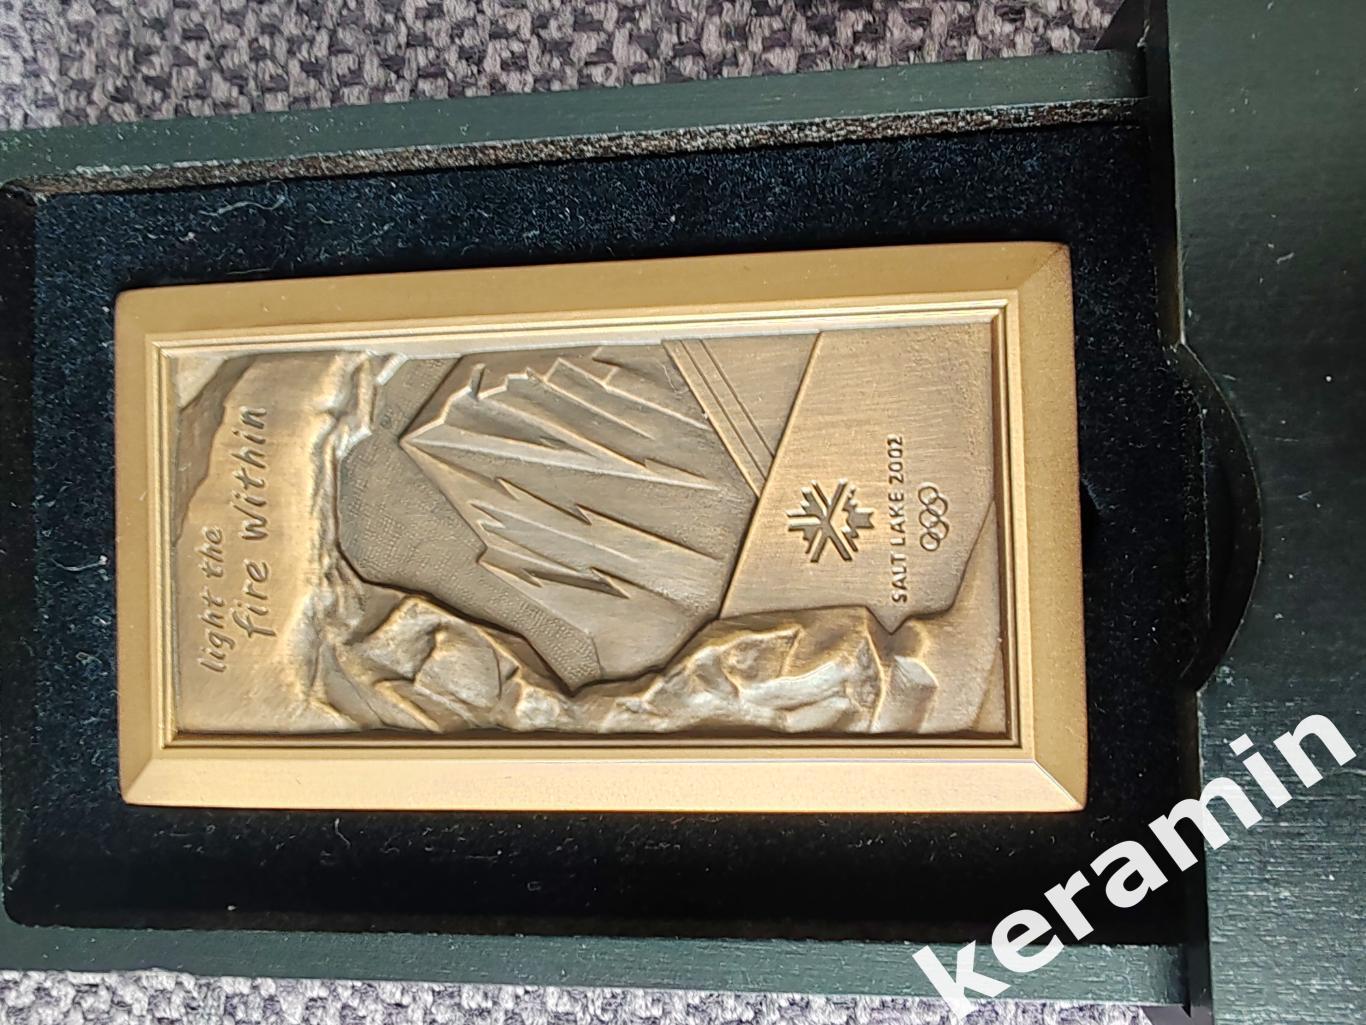 Медальучастника Олимпийских игр Солт-Лейк-Сити 2002 в оригинальной коробке. 2